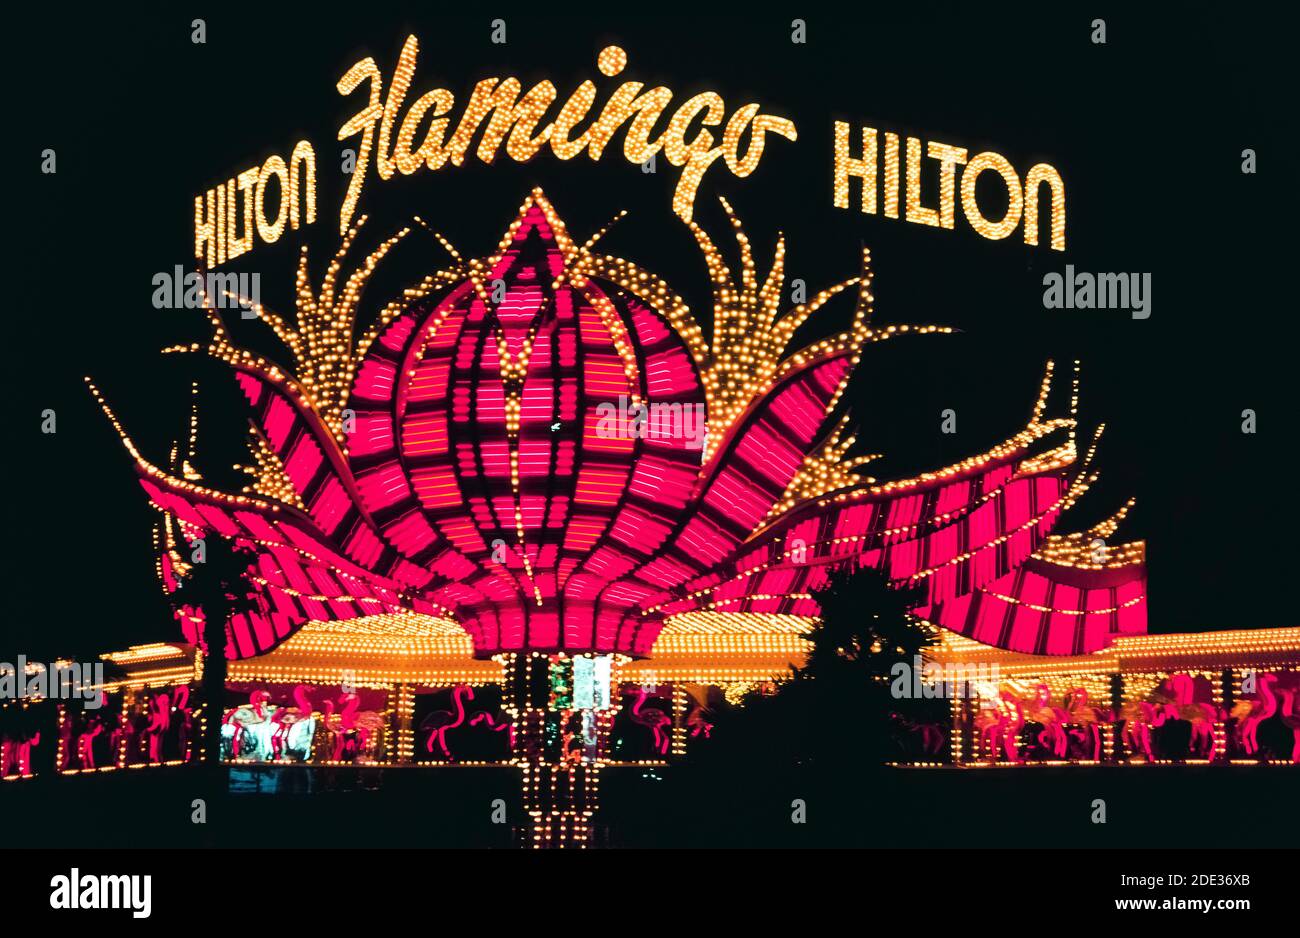 Il neon e altre luci colorate hanno reso questo cartello all'aperto per il Flamingo Hotel & Casino che si distingue di notte lungo Las Vegas Boulevard, meglio conosciuto come Strip, una strada fiancheggiata da spettacolari hotel e casinò a sud dei confini della città di Las Vegas, Nevada, USA. Il Flamingo ha aperto nel 1946, un'attrazione molto precoce in quella famigerata destinazione desertica ben nota per il suo gioco d'azzardo e i bei tempi. L'Hilton Corp. Possedeva l'hotel quando questa fotografia storica fu scattata nel 1983. Dieci anni dopo l'hotel originale fu demolito ma questo segno unico di piume rosa stilizzate fu salvato. Foto Stock